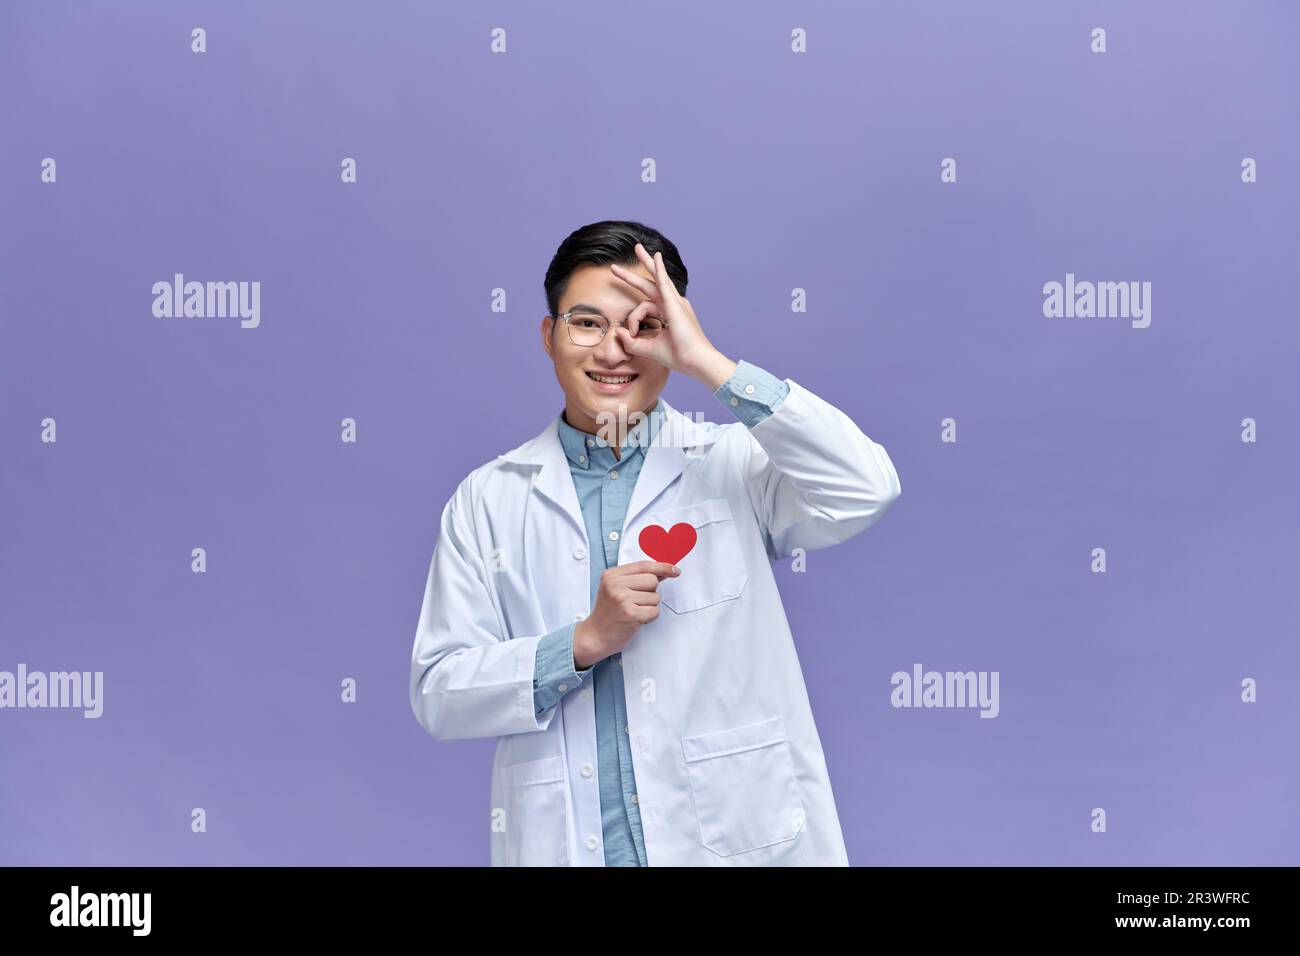 Ein Arzt, der ein Herz aus rotem Papier hält, mit einem fröhlichen Gesicht, das lächelt und das OK-Schild macht, mit einem Auge, das durch die Finger schaut Stockfoto